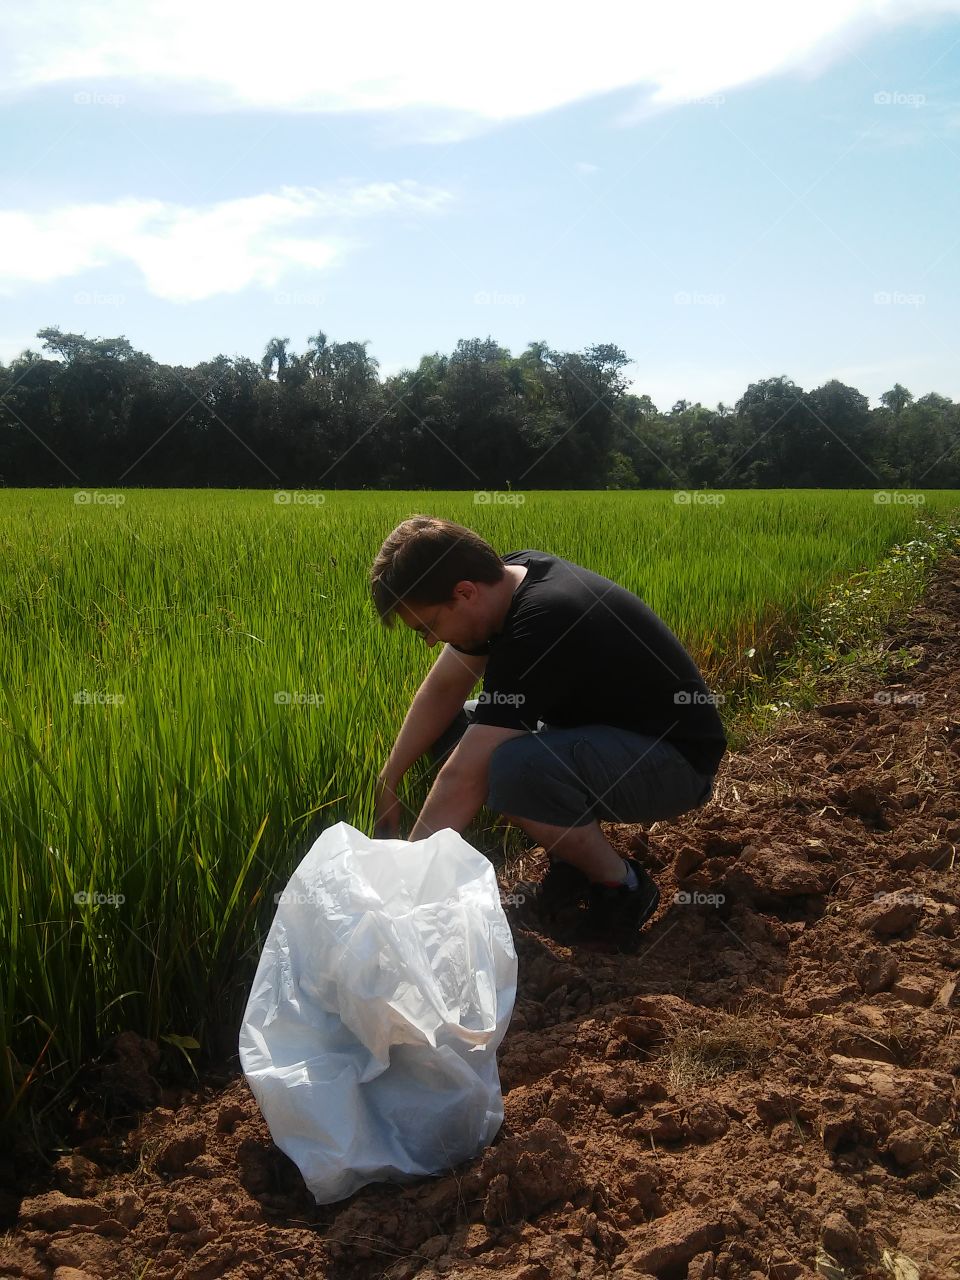 rice soil analisys